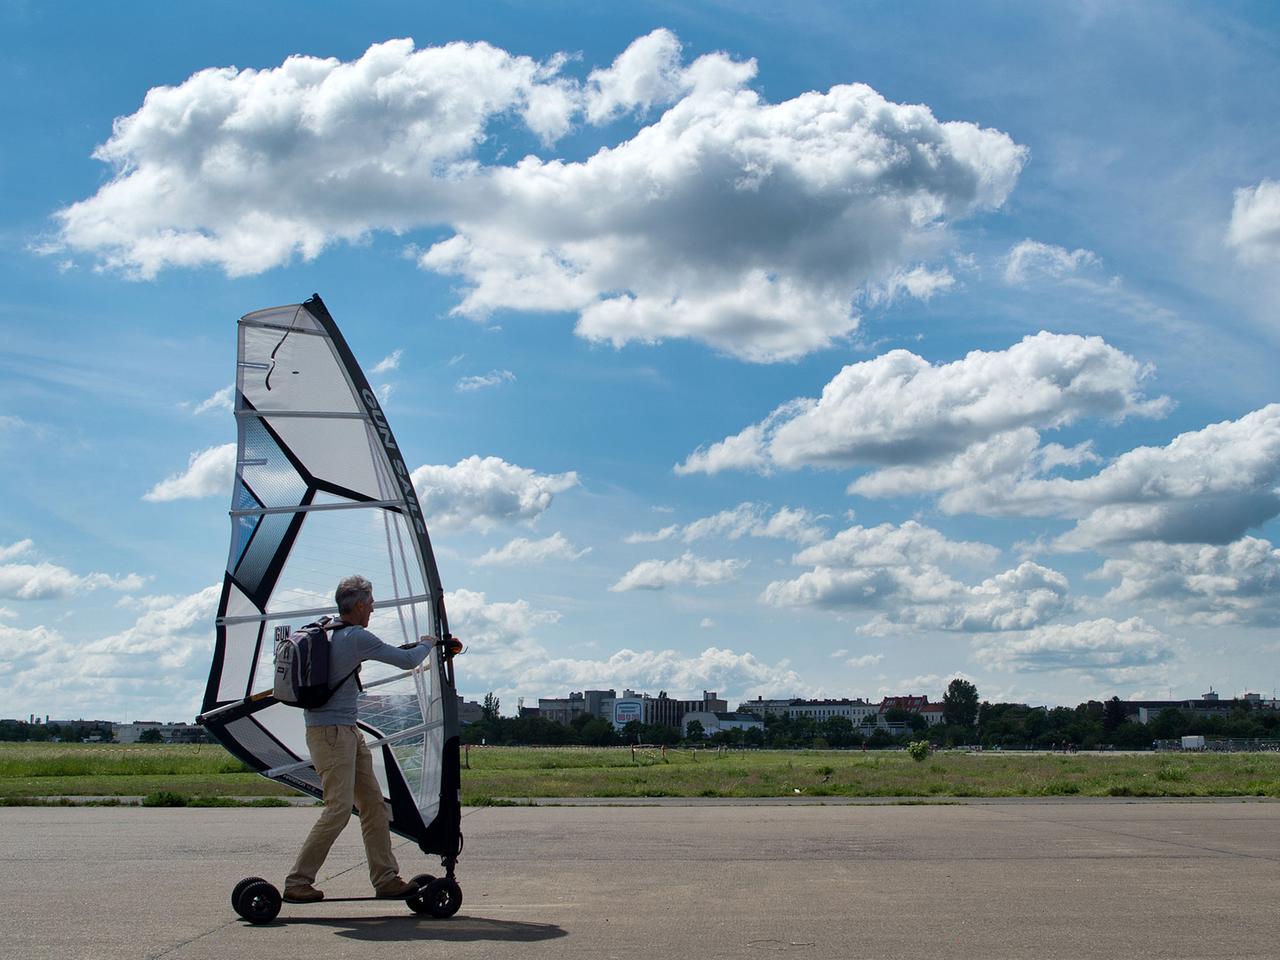 Ein Windsurfer auf einem Board ist am 16.05.2014 auf dem Tempelhofer Feld in Berlin unterwegs.